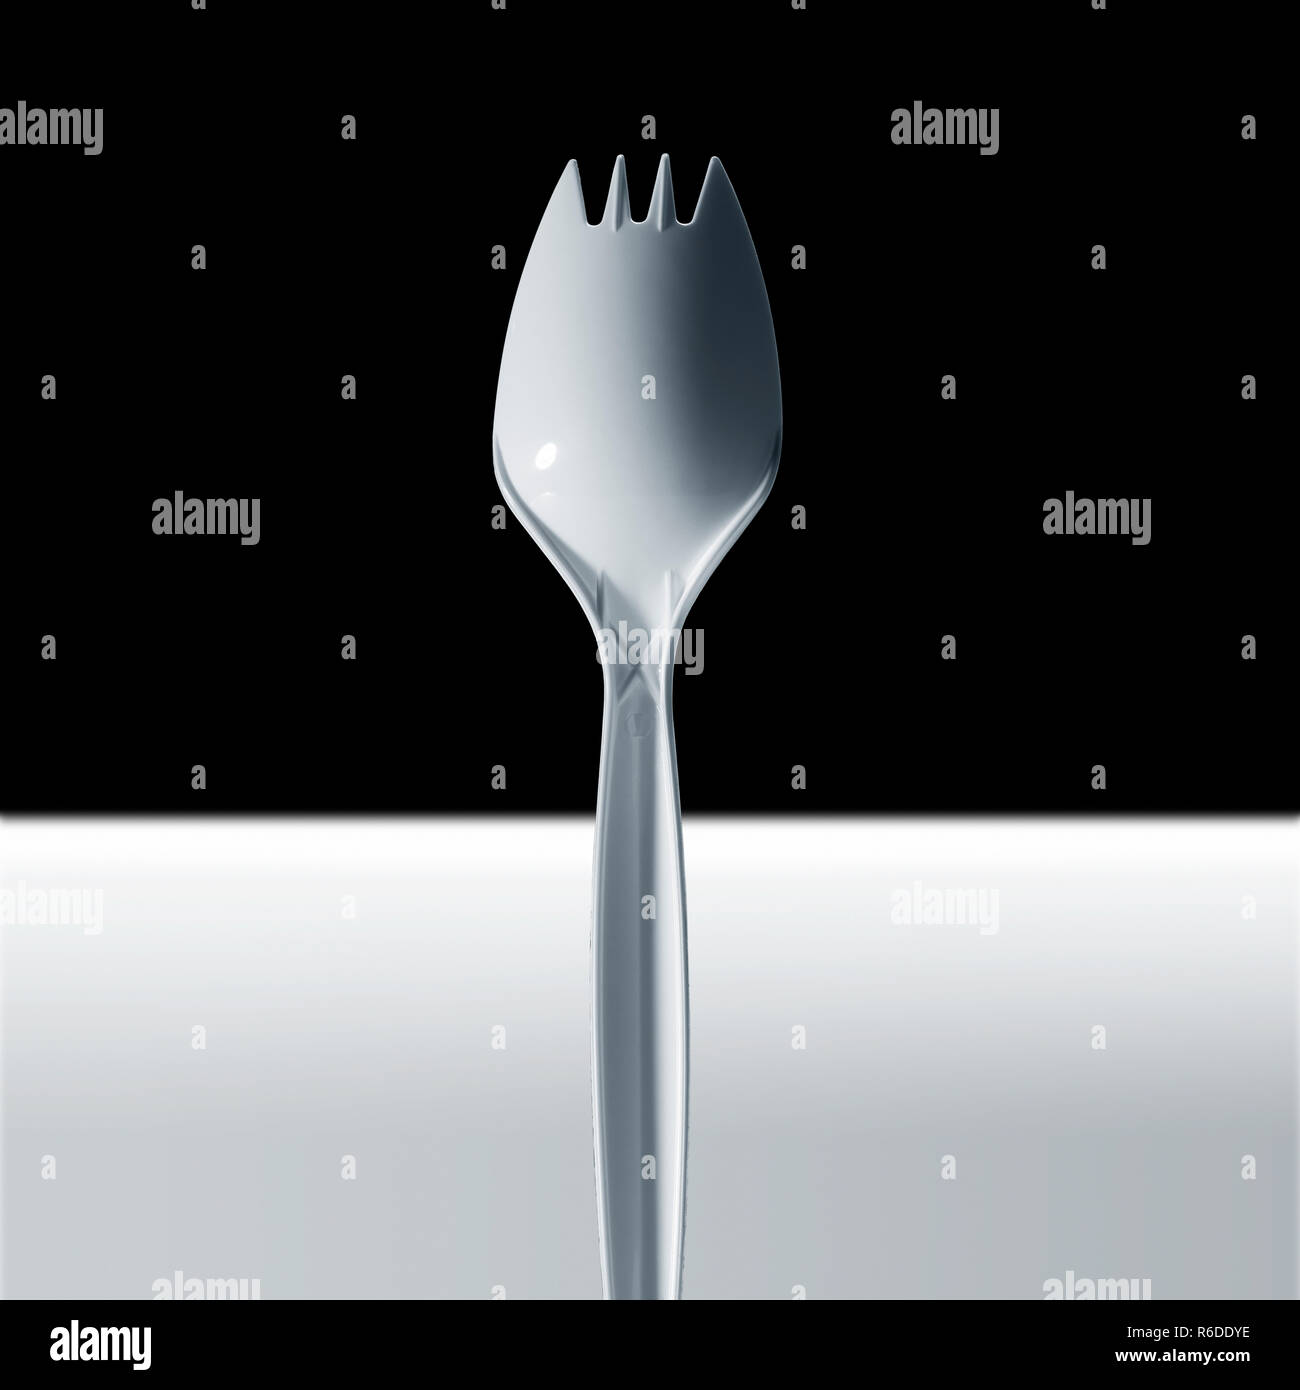 Image recadrée de fourchette en plastique jetables, surface blanche, fond noir Banque D'Images